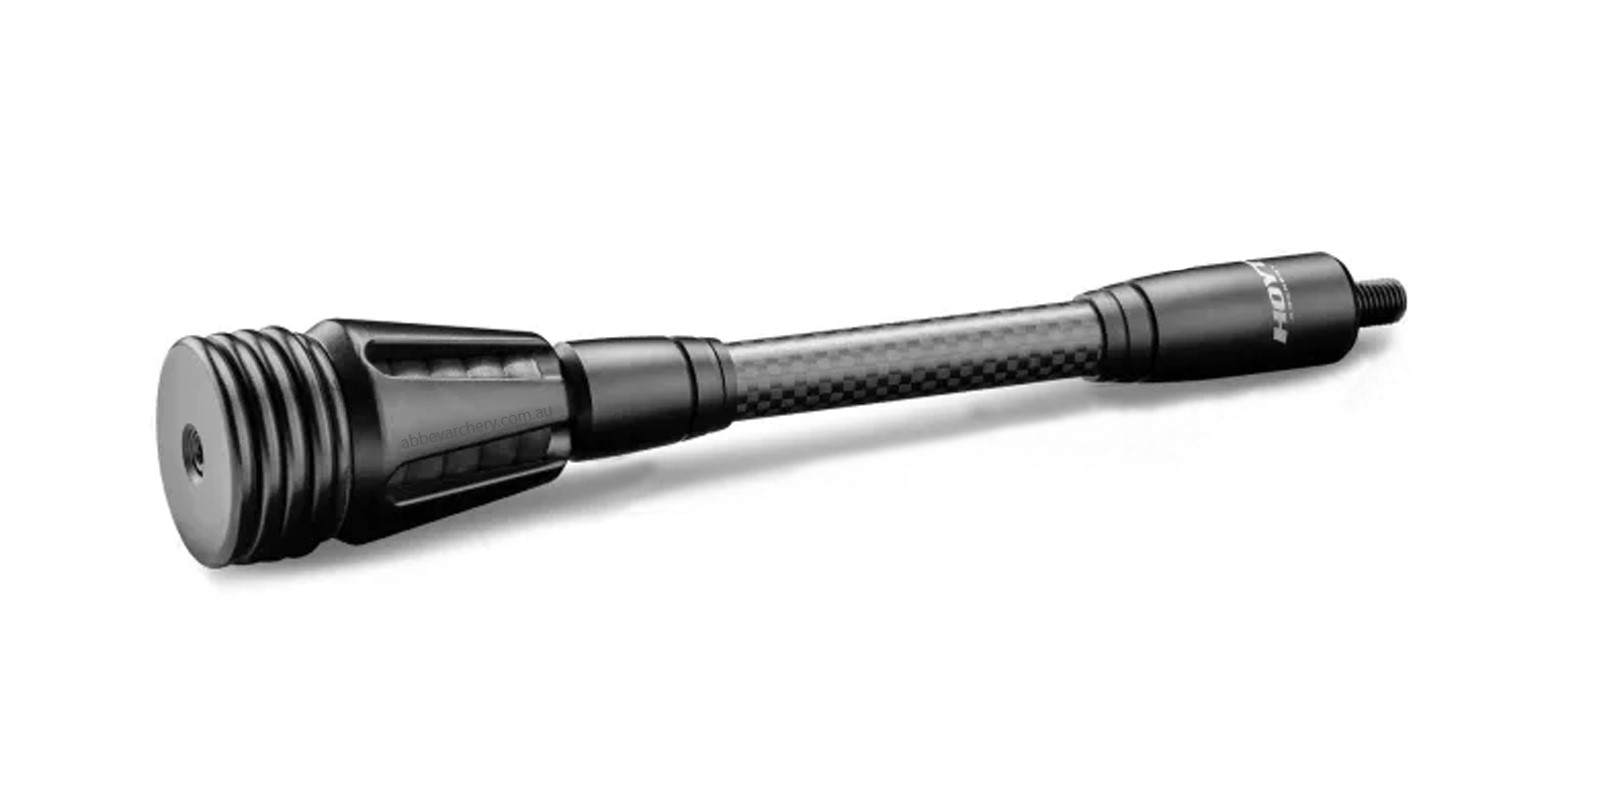 Hoyt Carbon Pro Series 8in Stabiliser Black large image. Click to return to Hoyt Carbon Pro Series 8in Stabiliser Black price and description